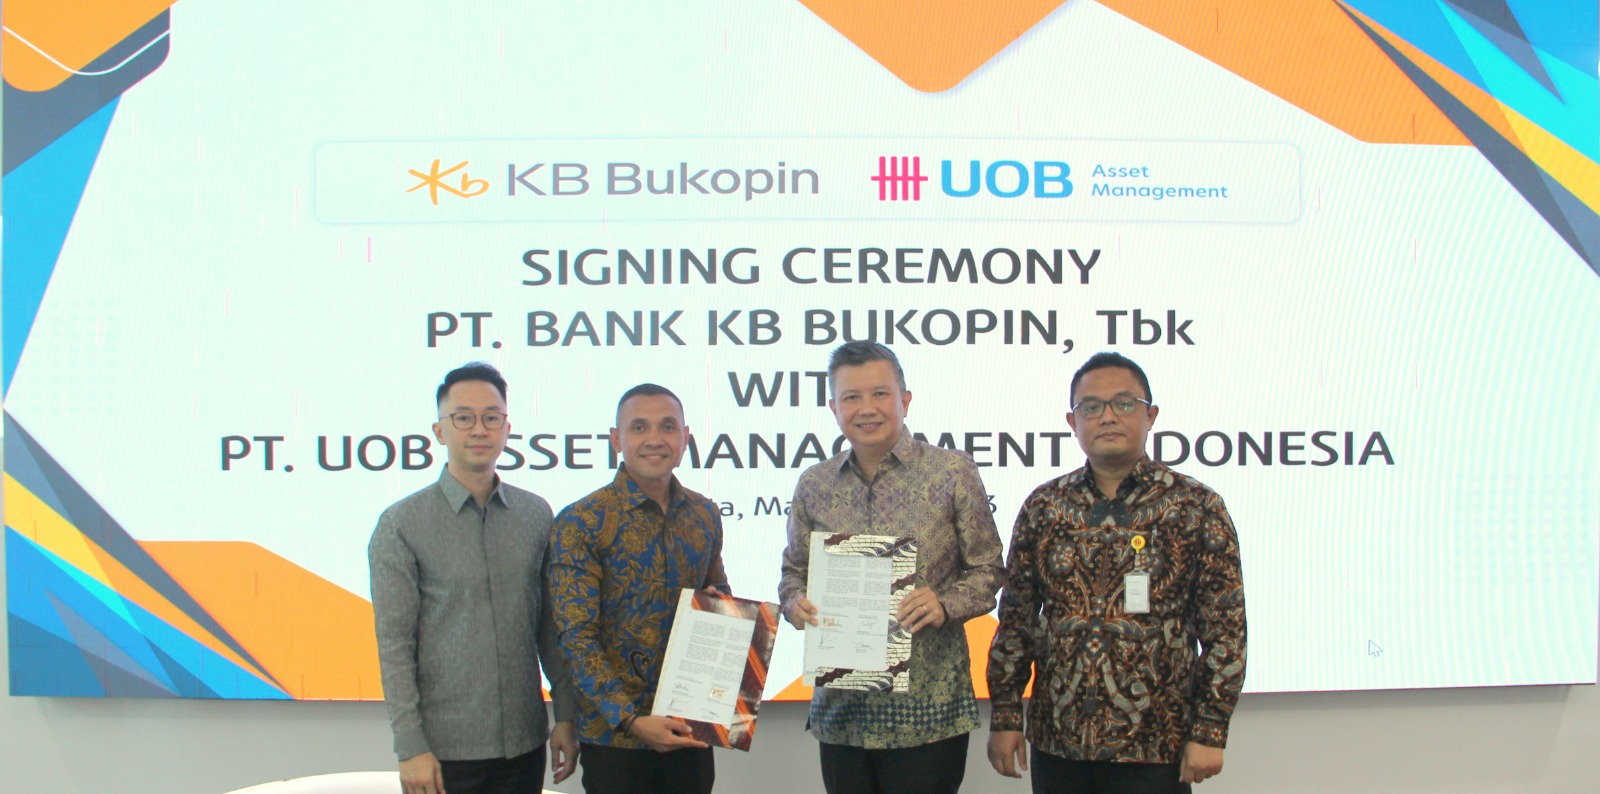 Dukung Investor Reksadana, Bank KB Bukopin Kerja Sama UOB Asset Management Indonesia